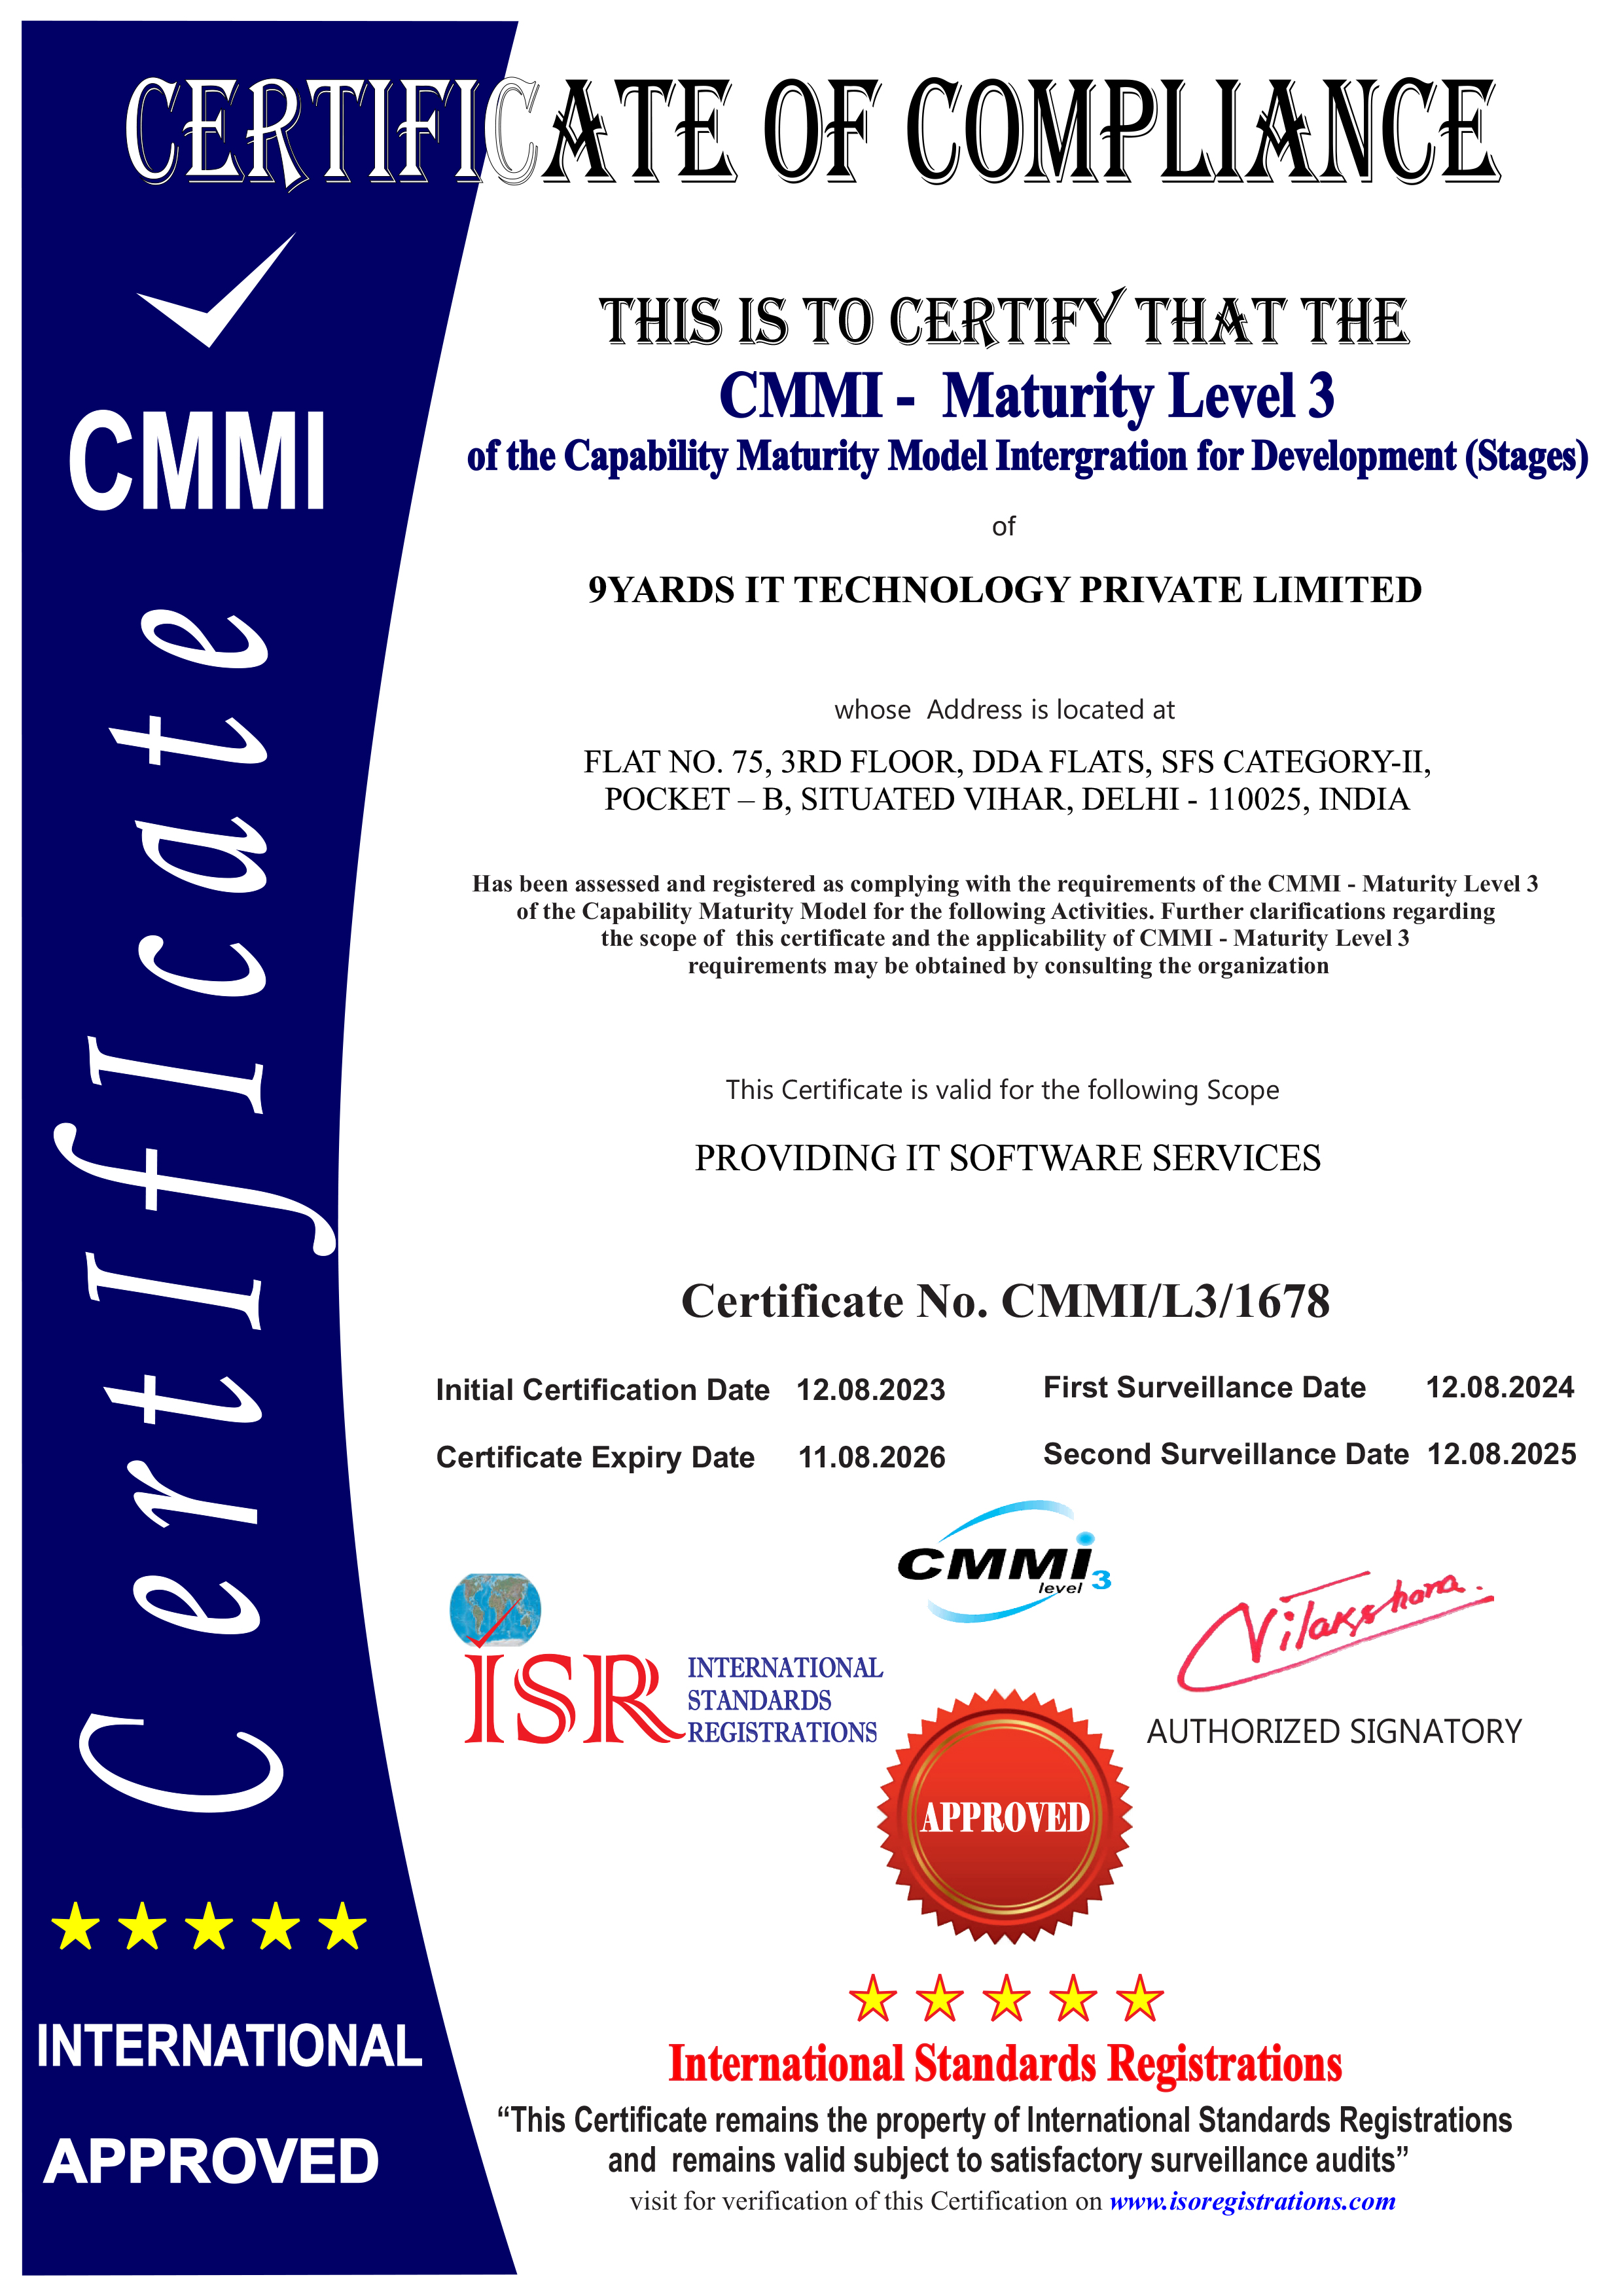 CMMI Certified